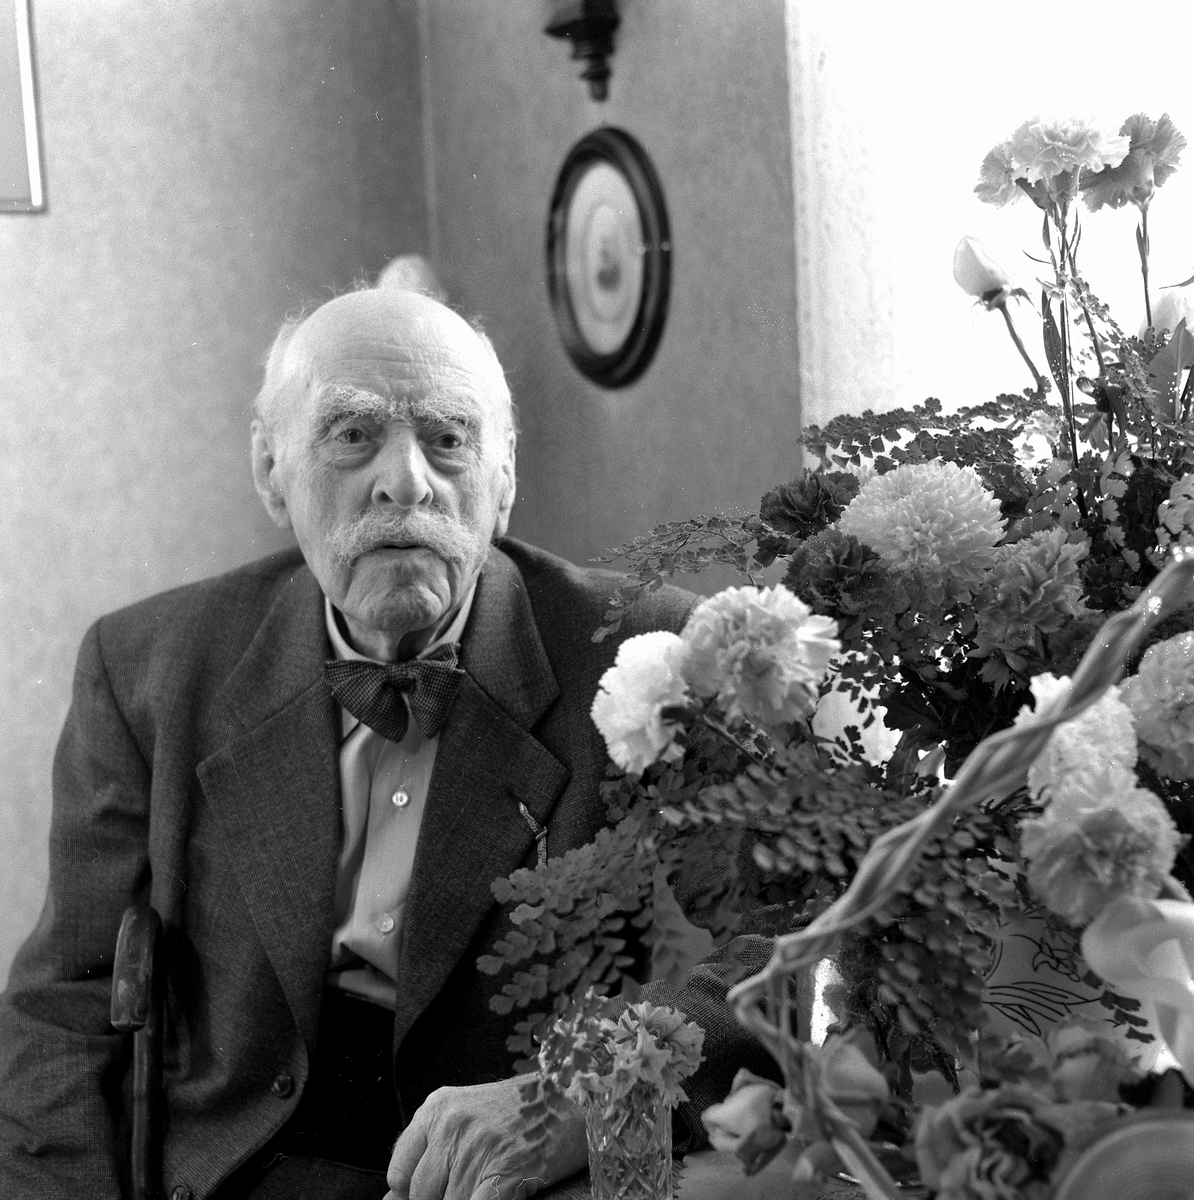 Jeremias i Tröstlösa 90 år. Levi Rickson.
4 augusti 1958.